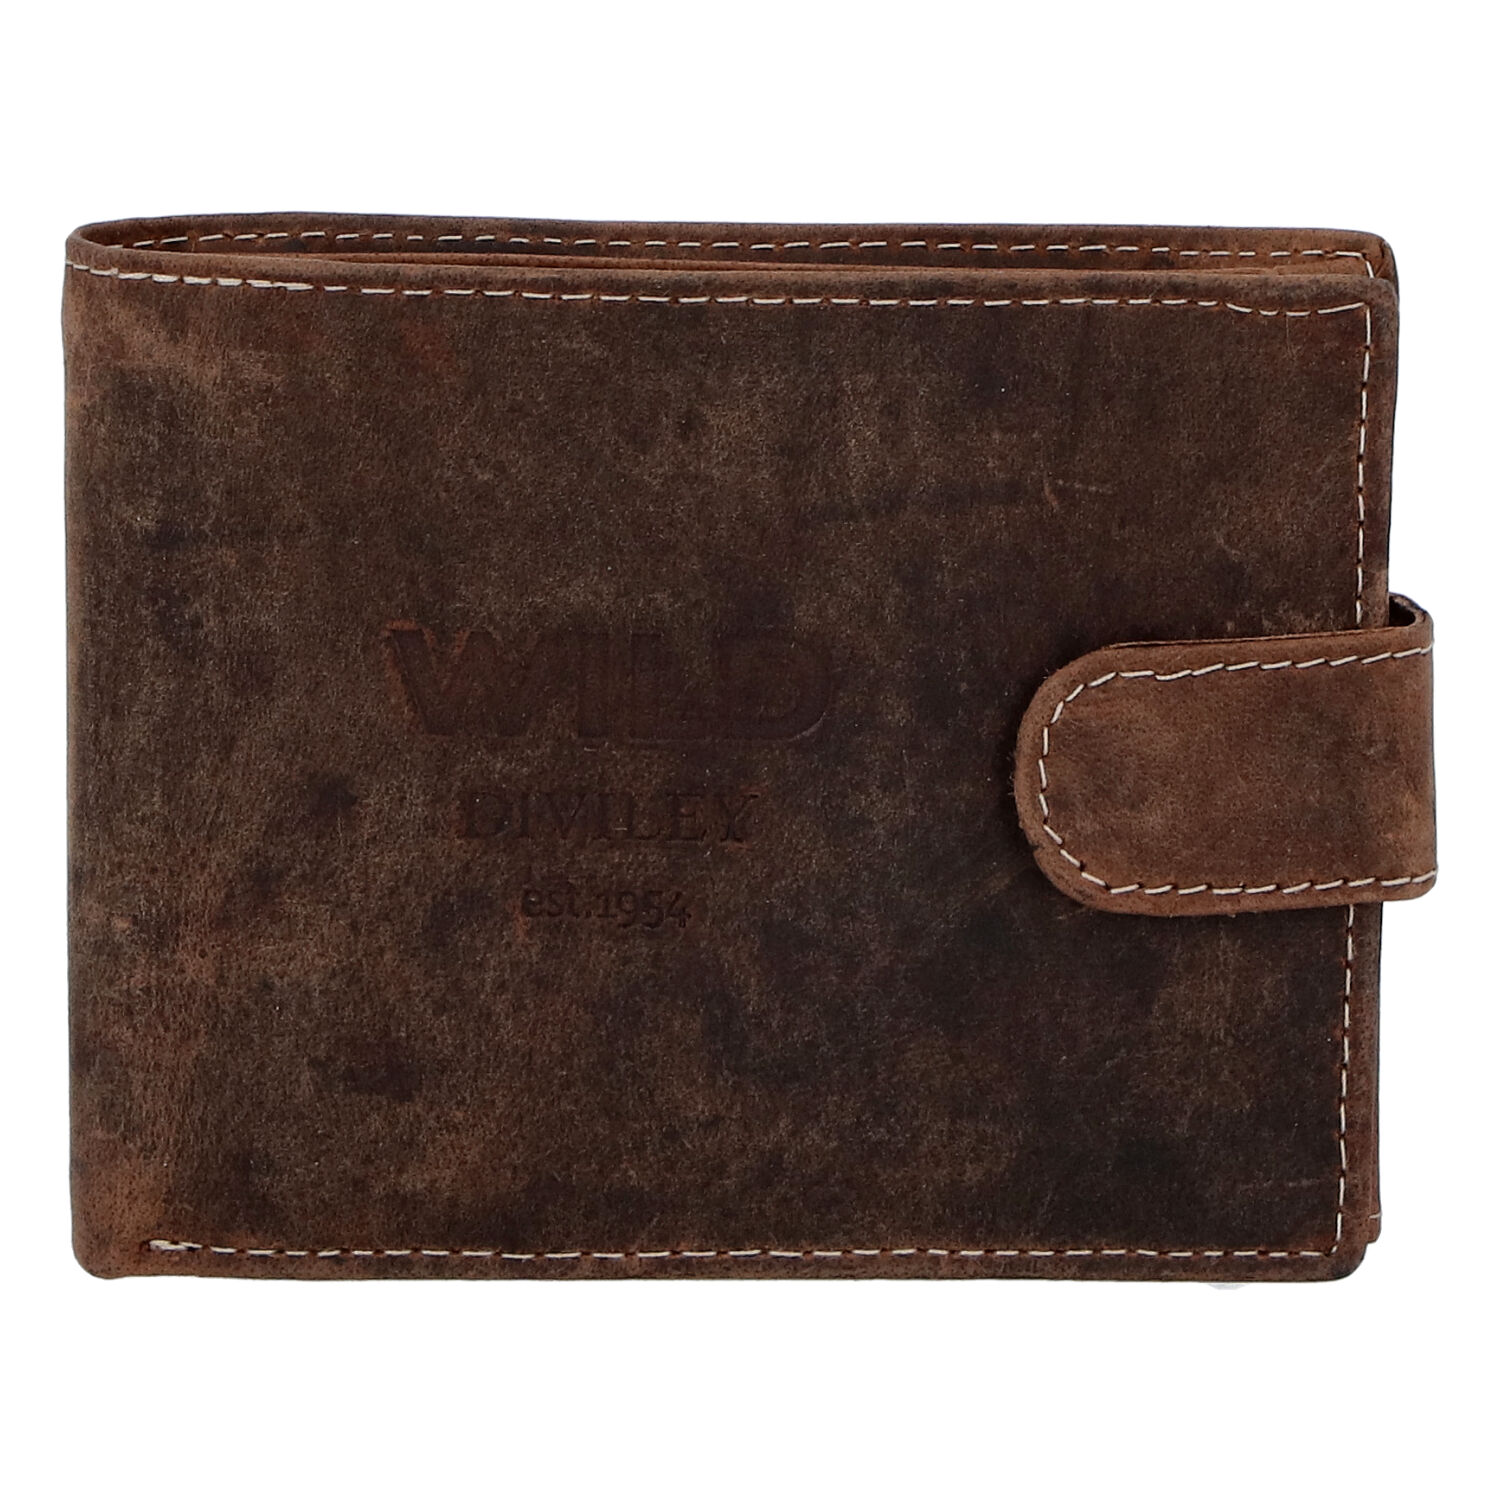 Pánska kožená peňaženka hnedá - WILD Flam